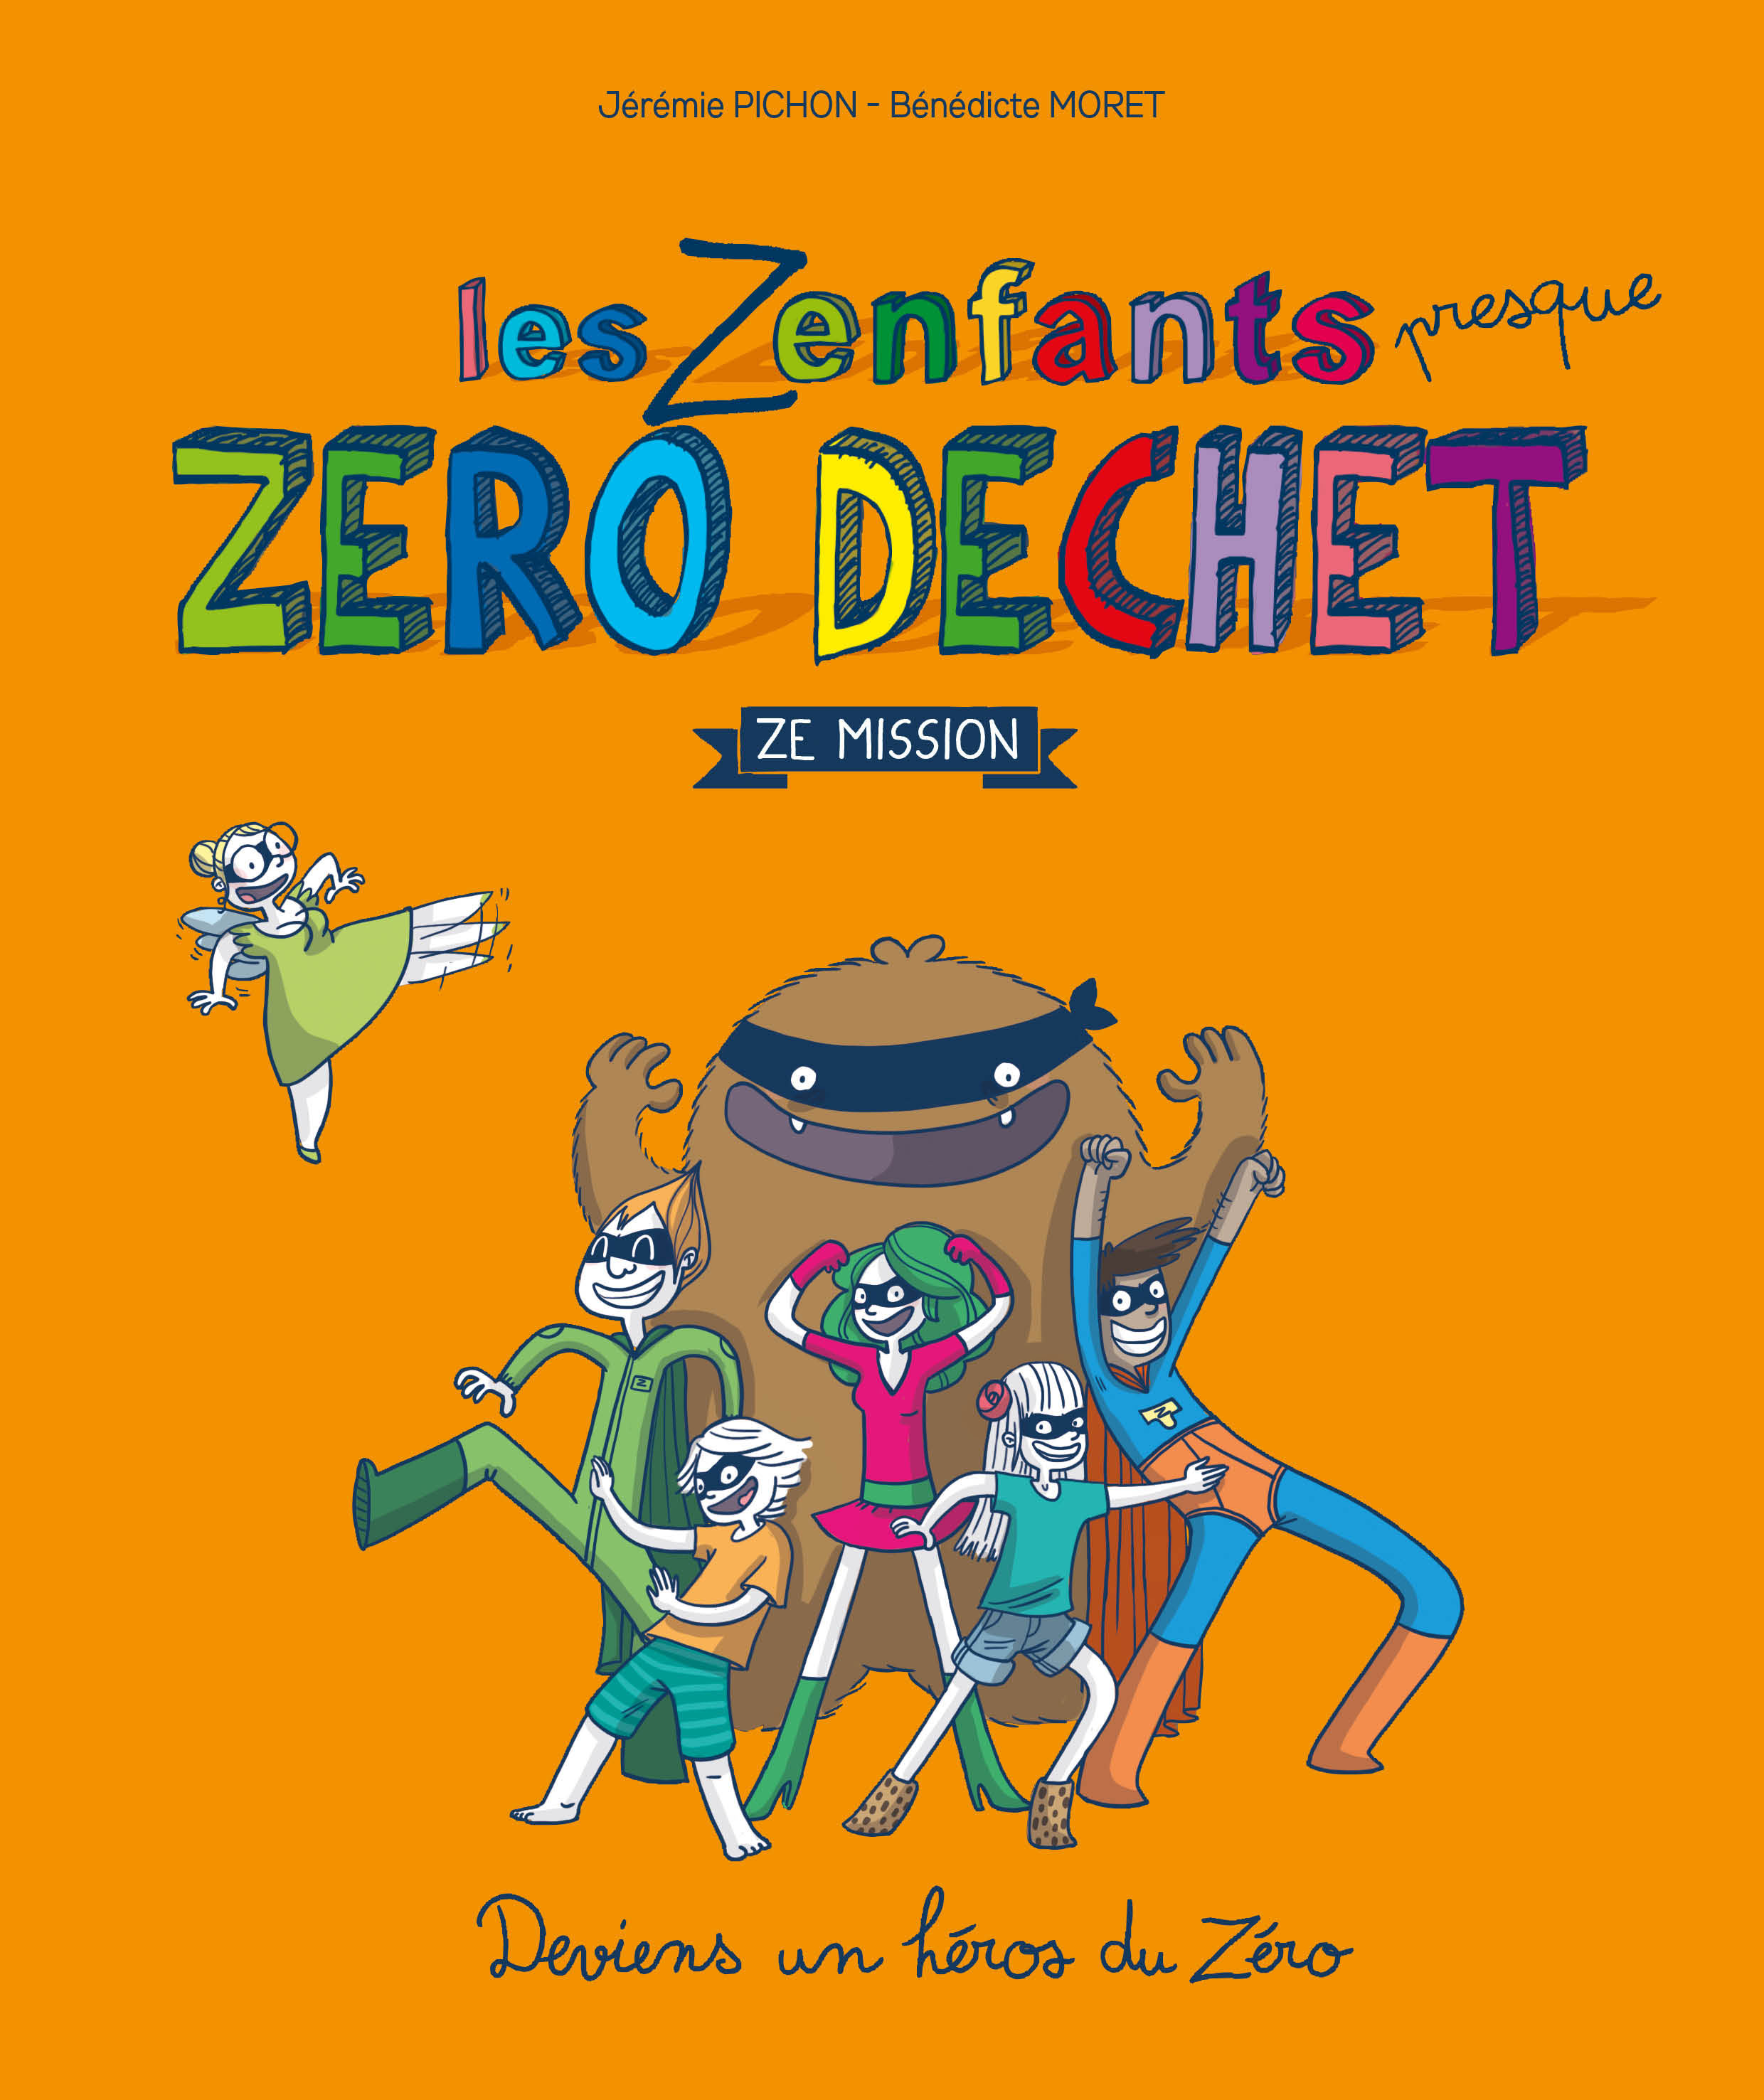 Famille (Presque) Zéro Déchets - Ze Jeu - Jeux de société